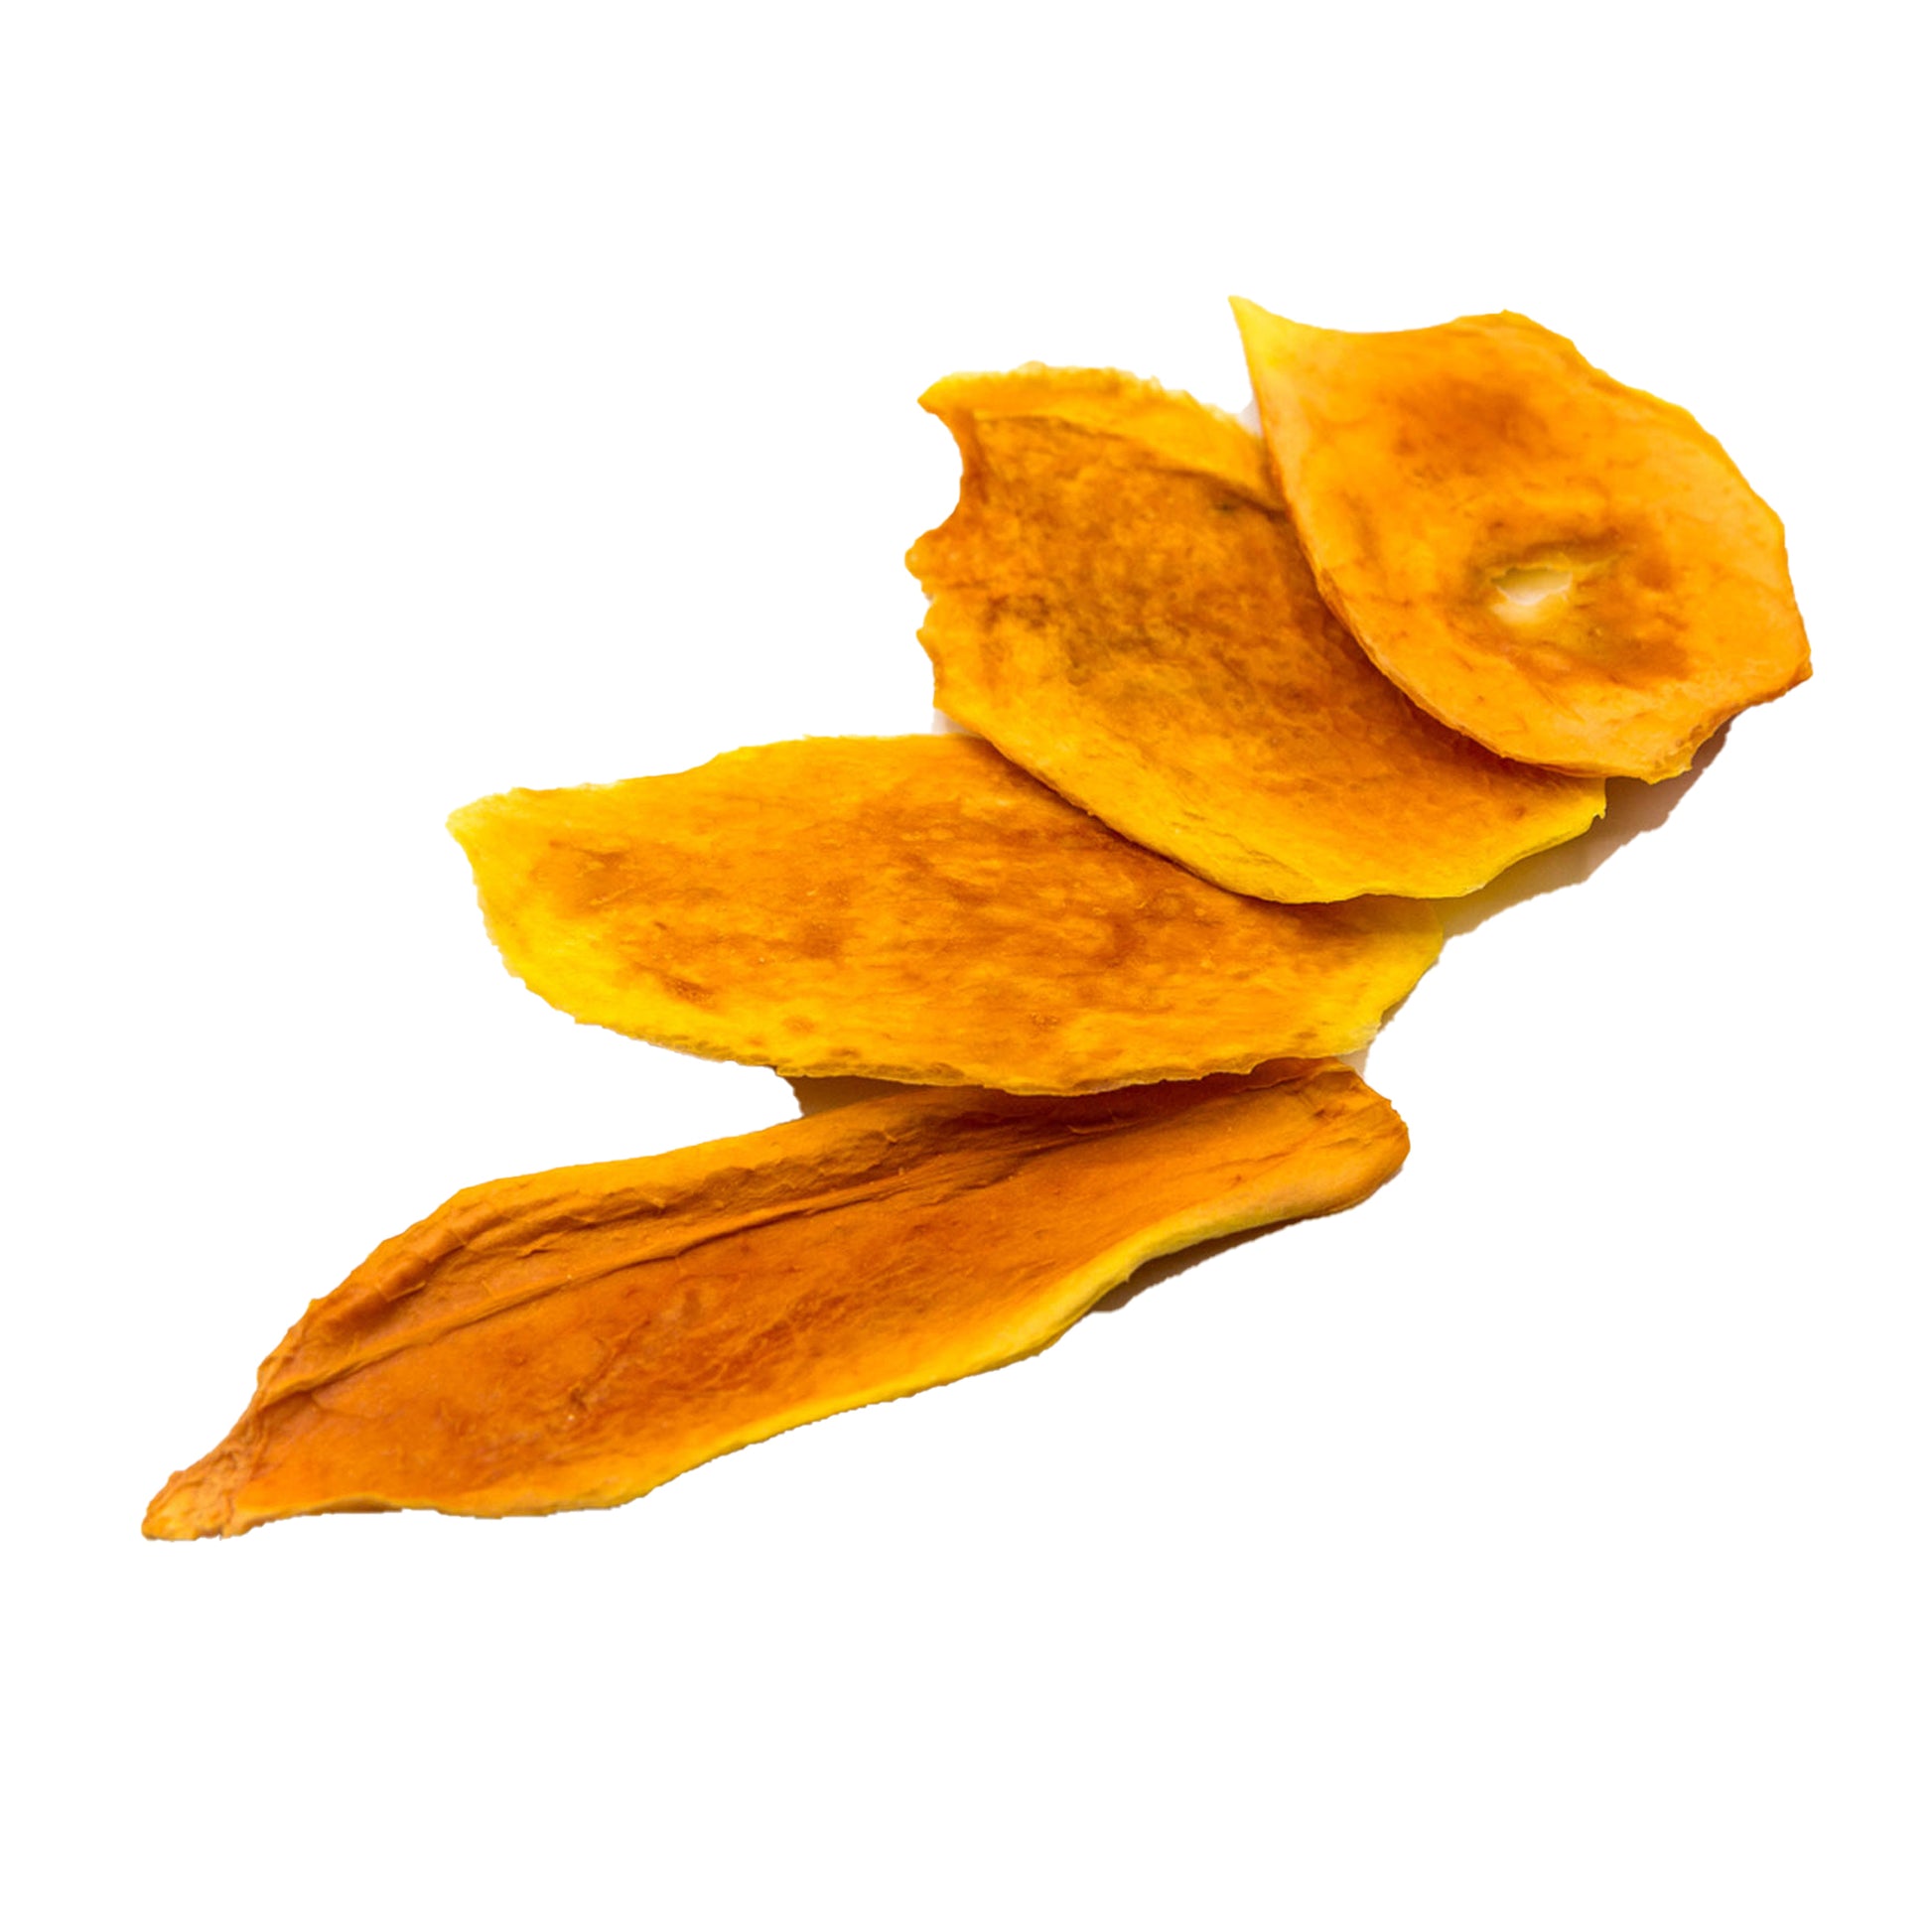 Vier lose herumliegende gedörrte Papaya Scheiben als gesunder Snack für Zwischendurch.